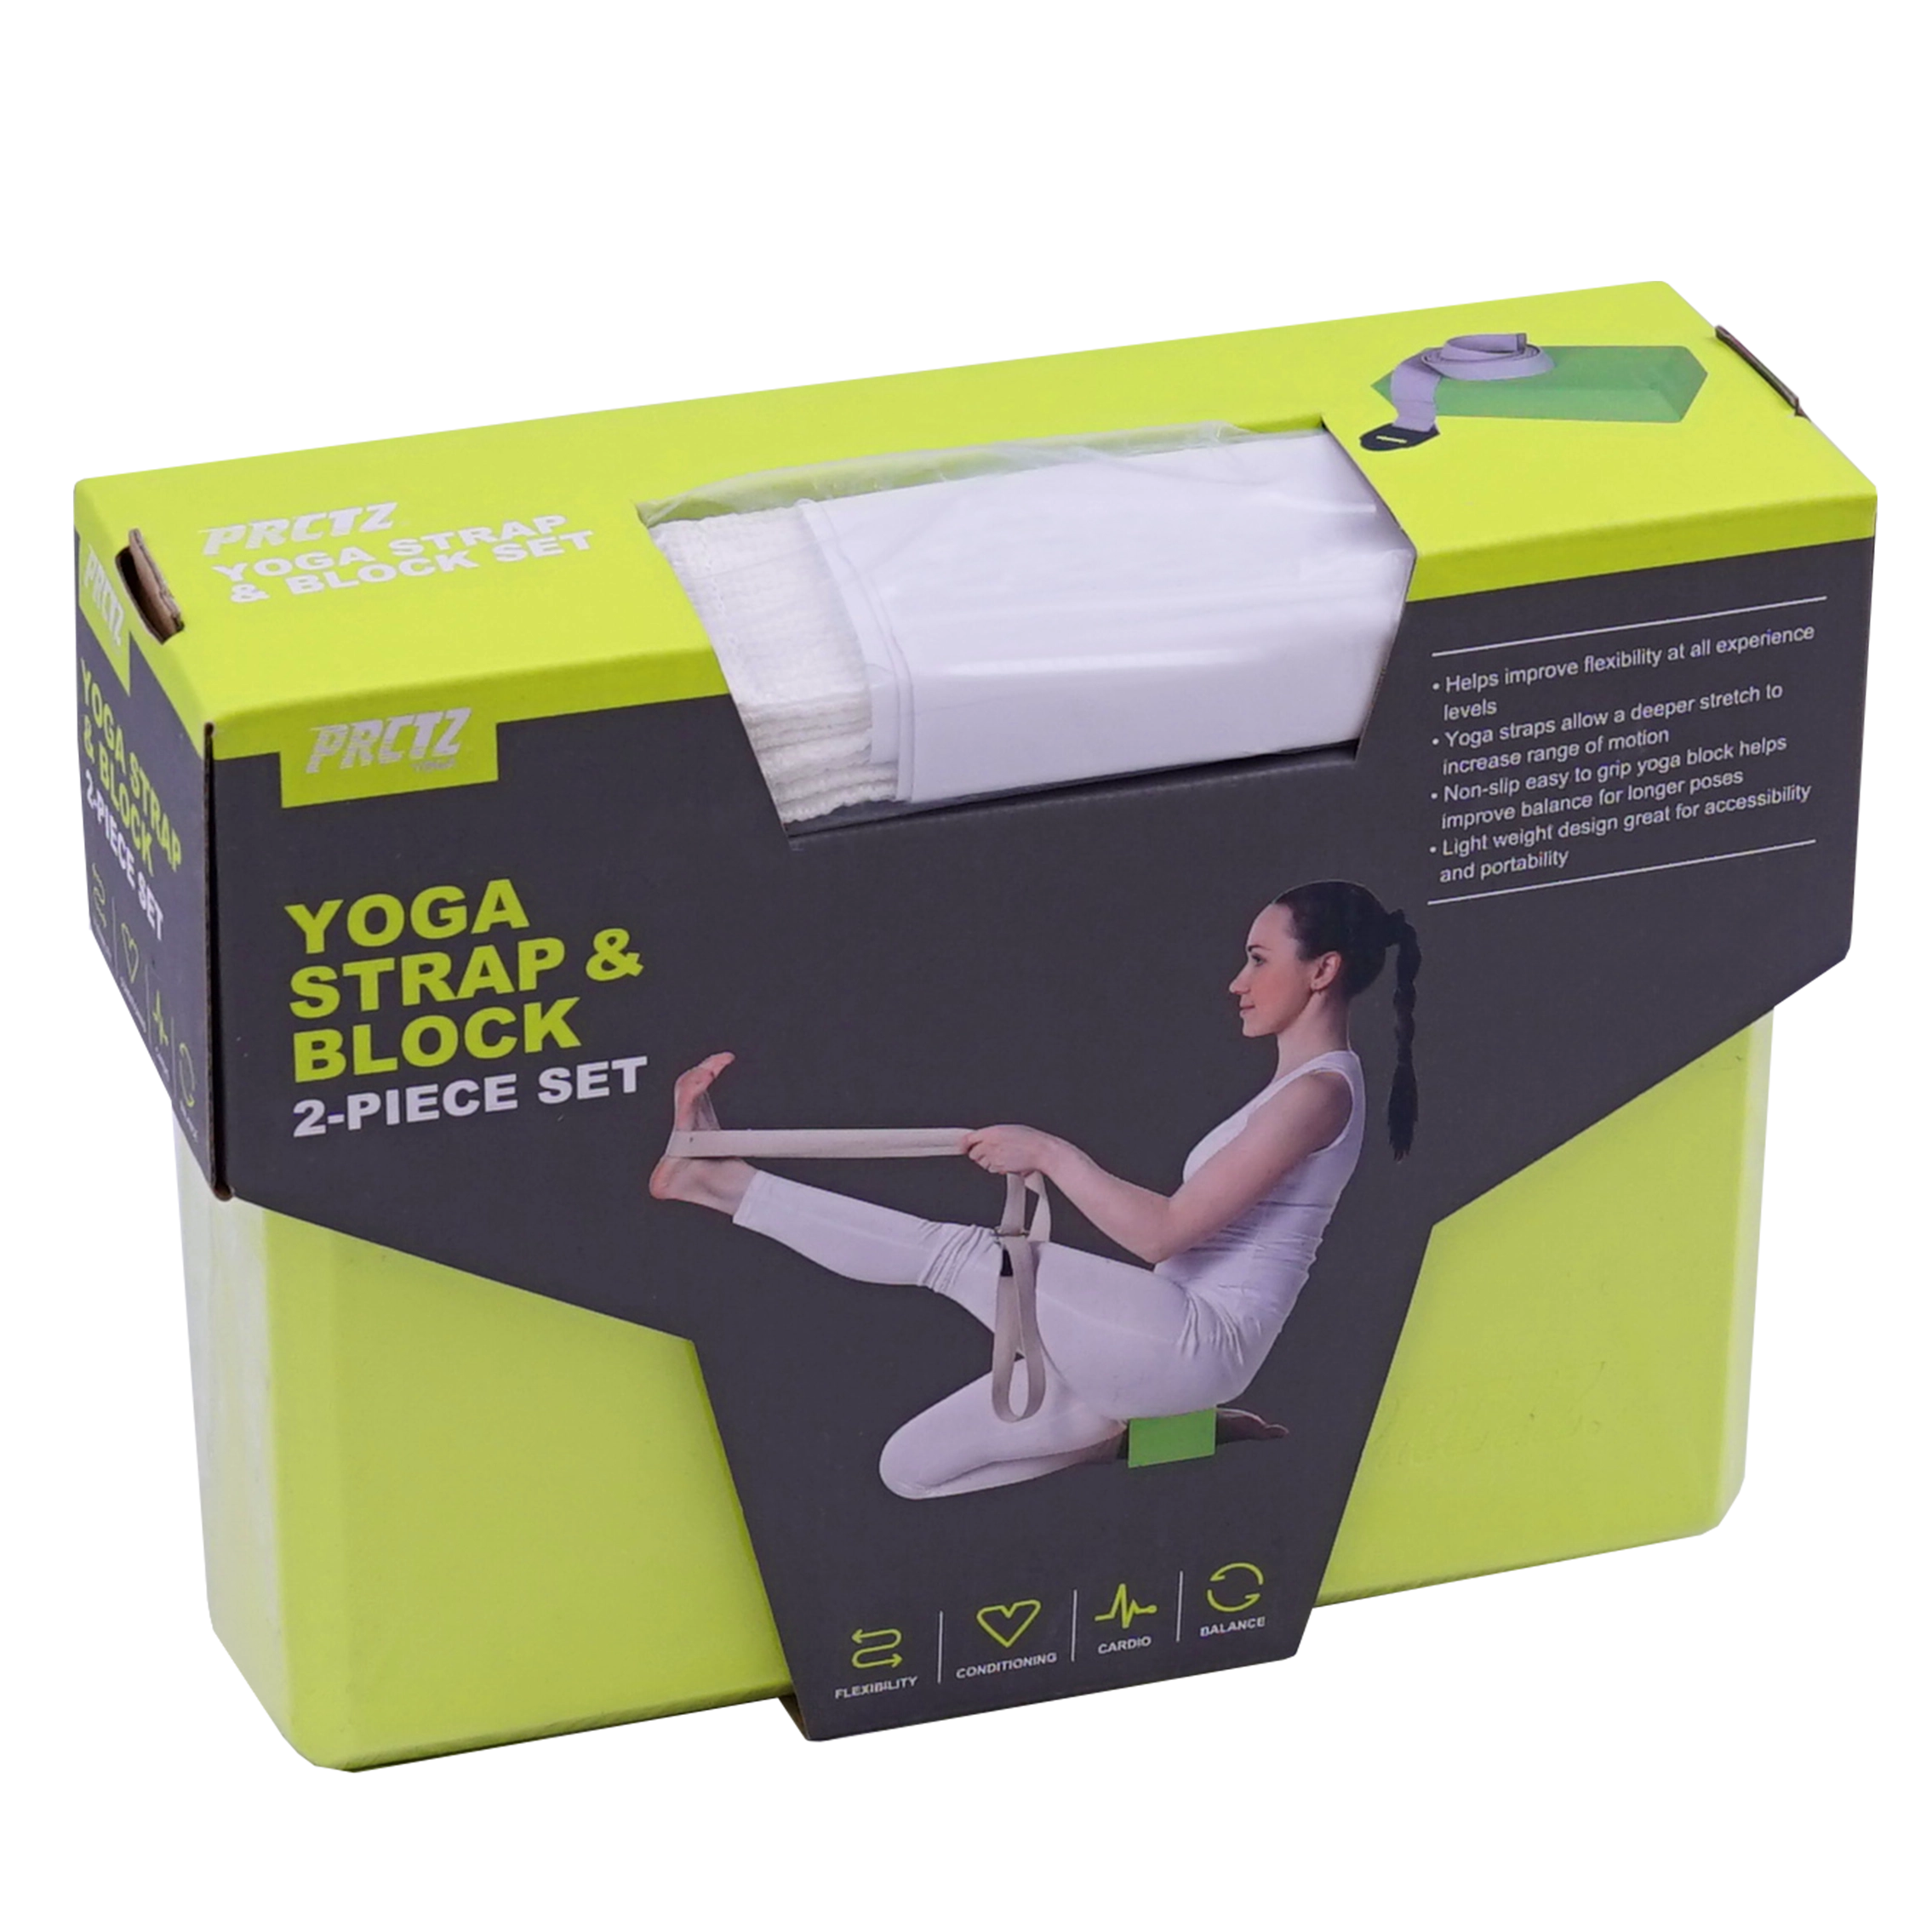 Блок для йоги в комплекте с ремнем PRCTZ YOGA STRAP & BLOCK 2-PIECE SET, набор.  с гарантией